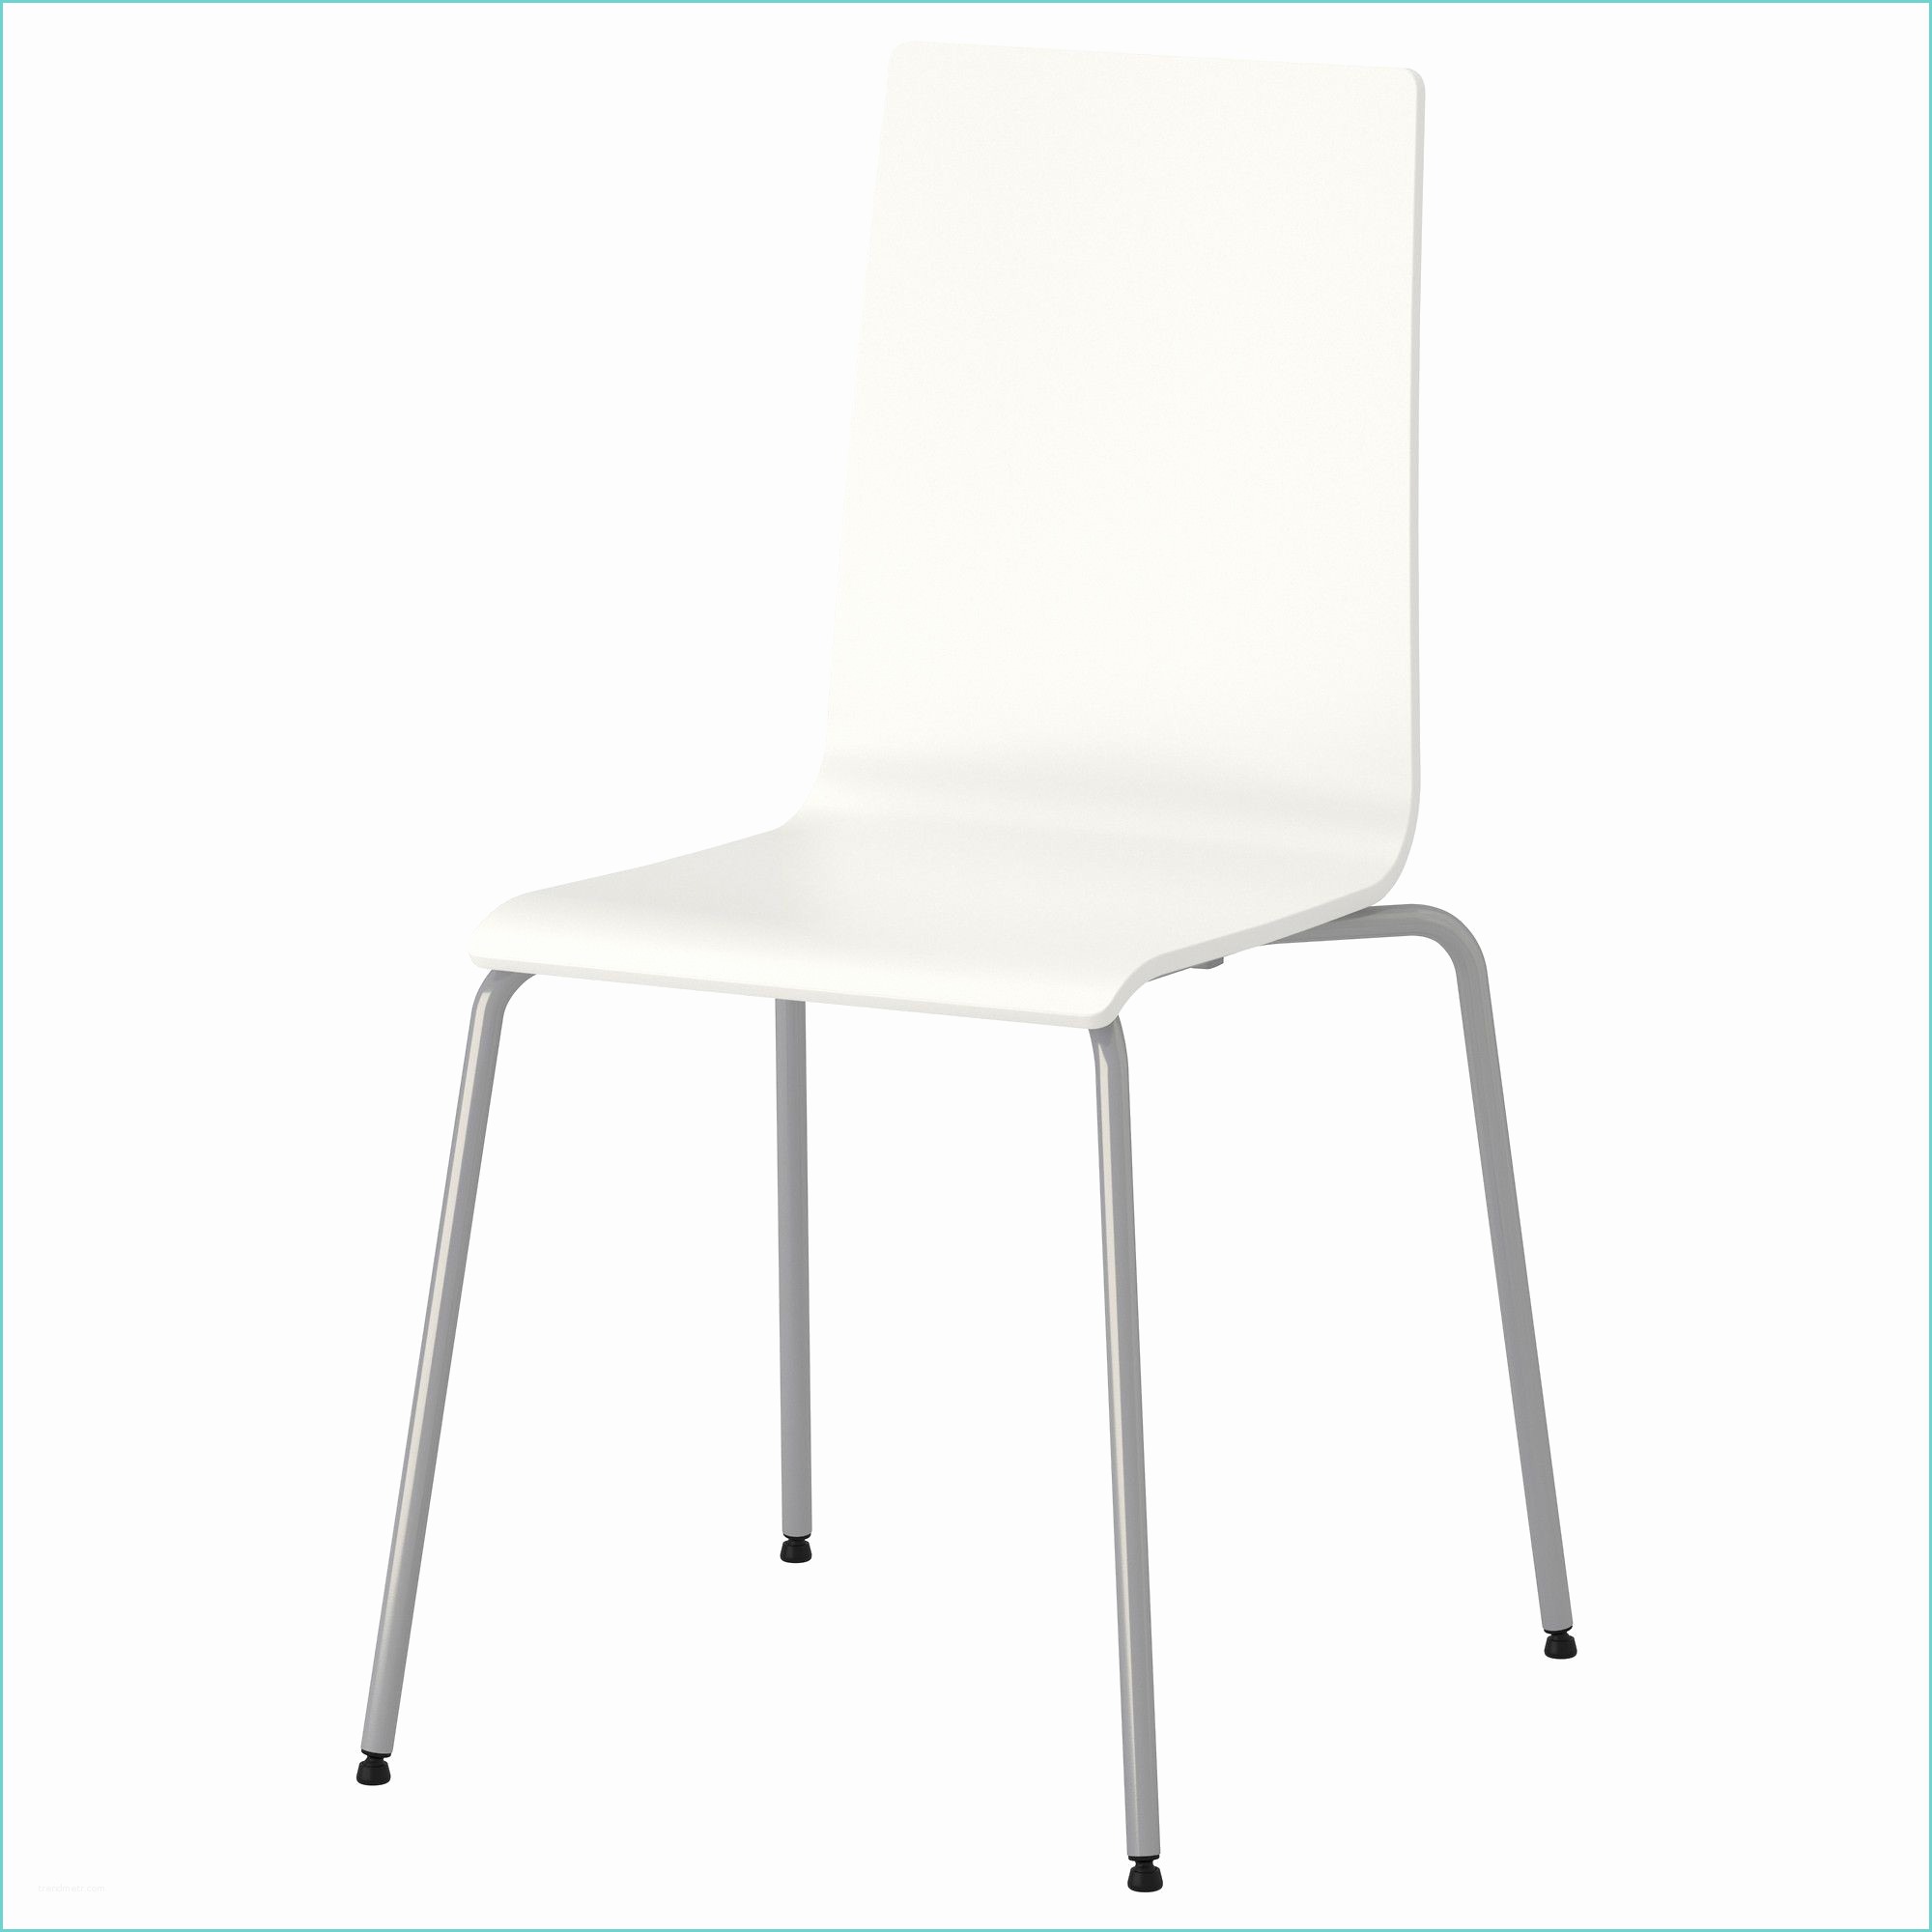 Chaises Plexiglass Ikea Chaise En Plexi Unique Chaise En Plexiglas Ikea Gallery